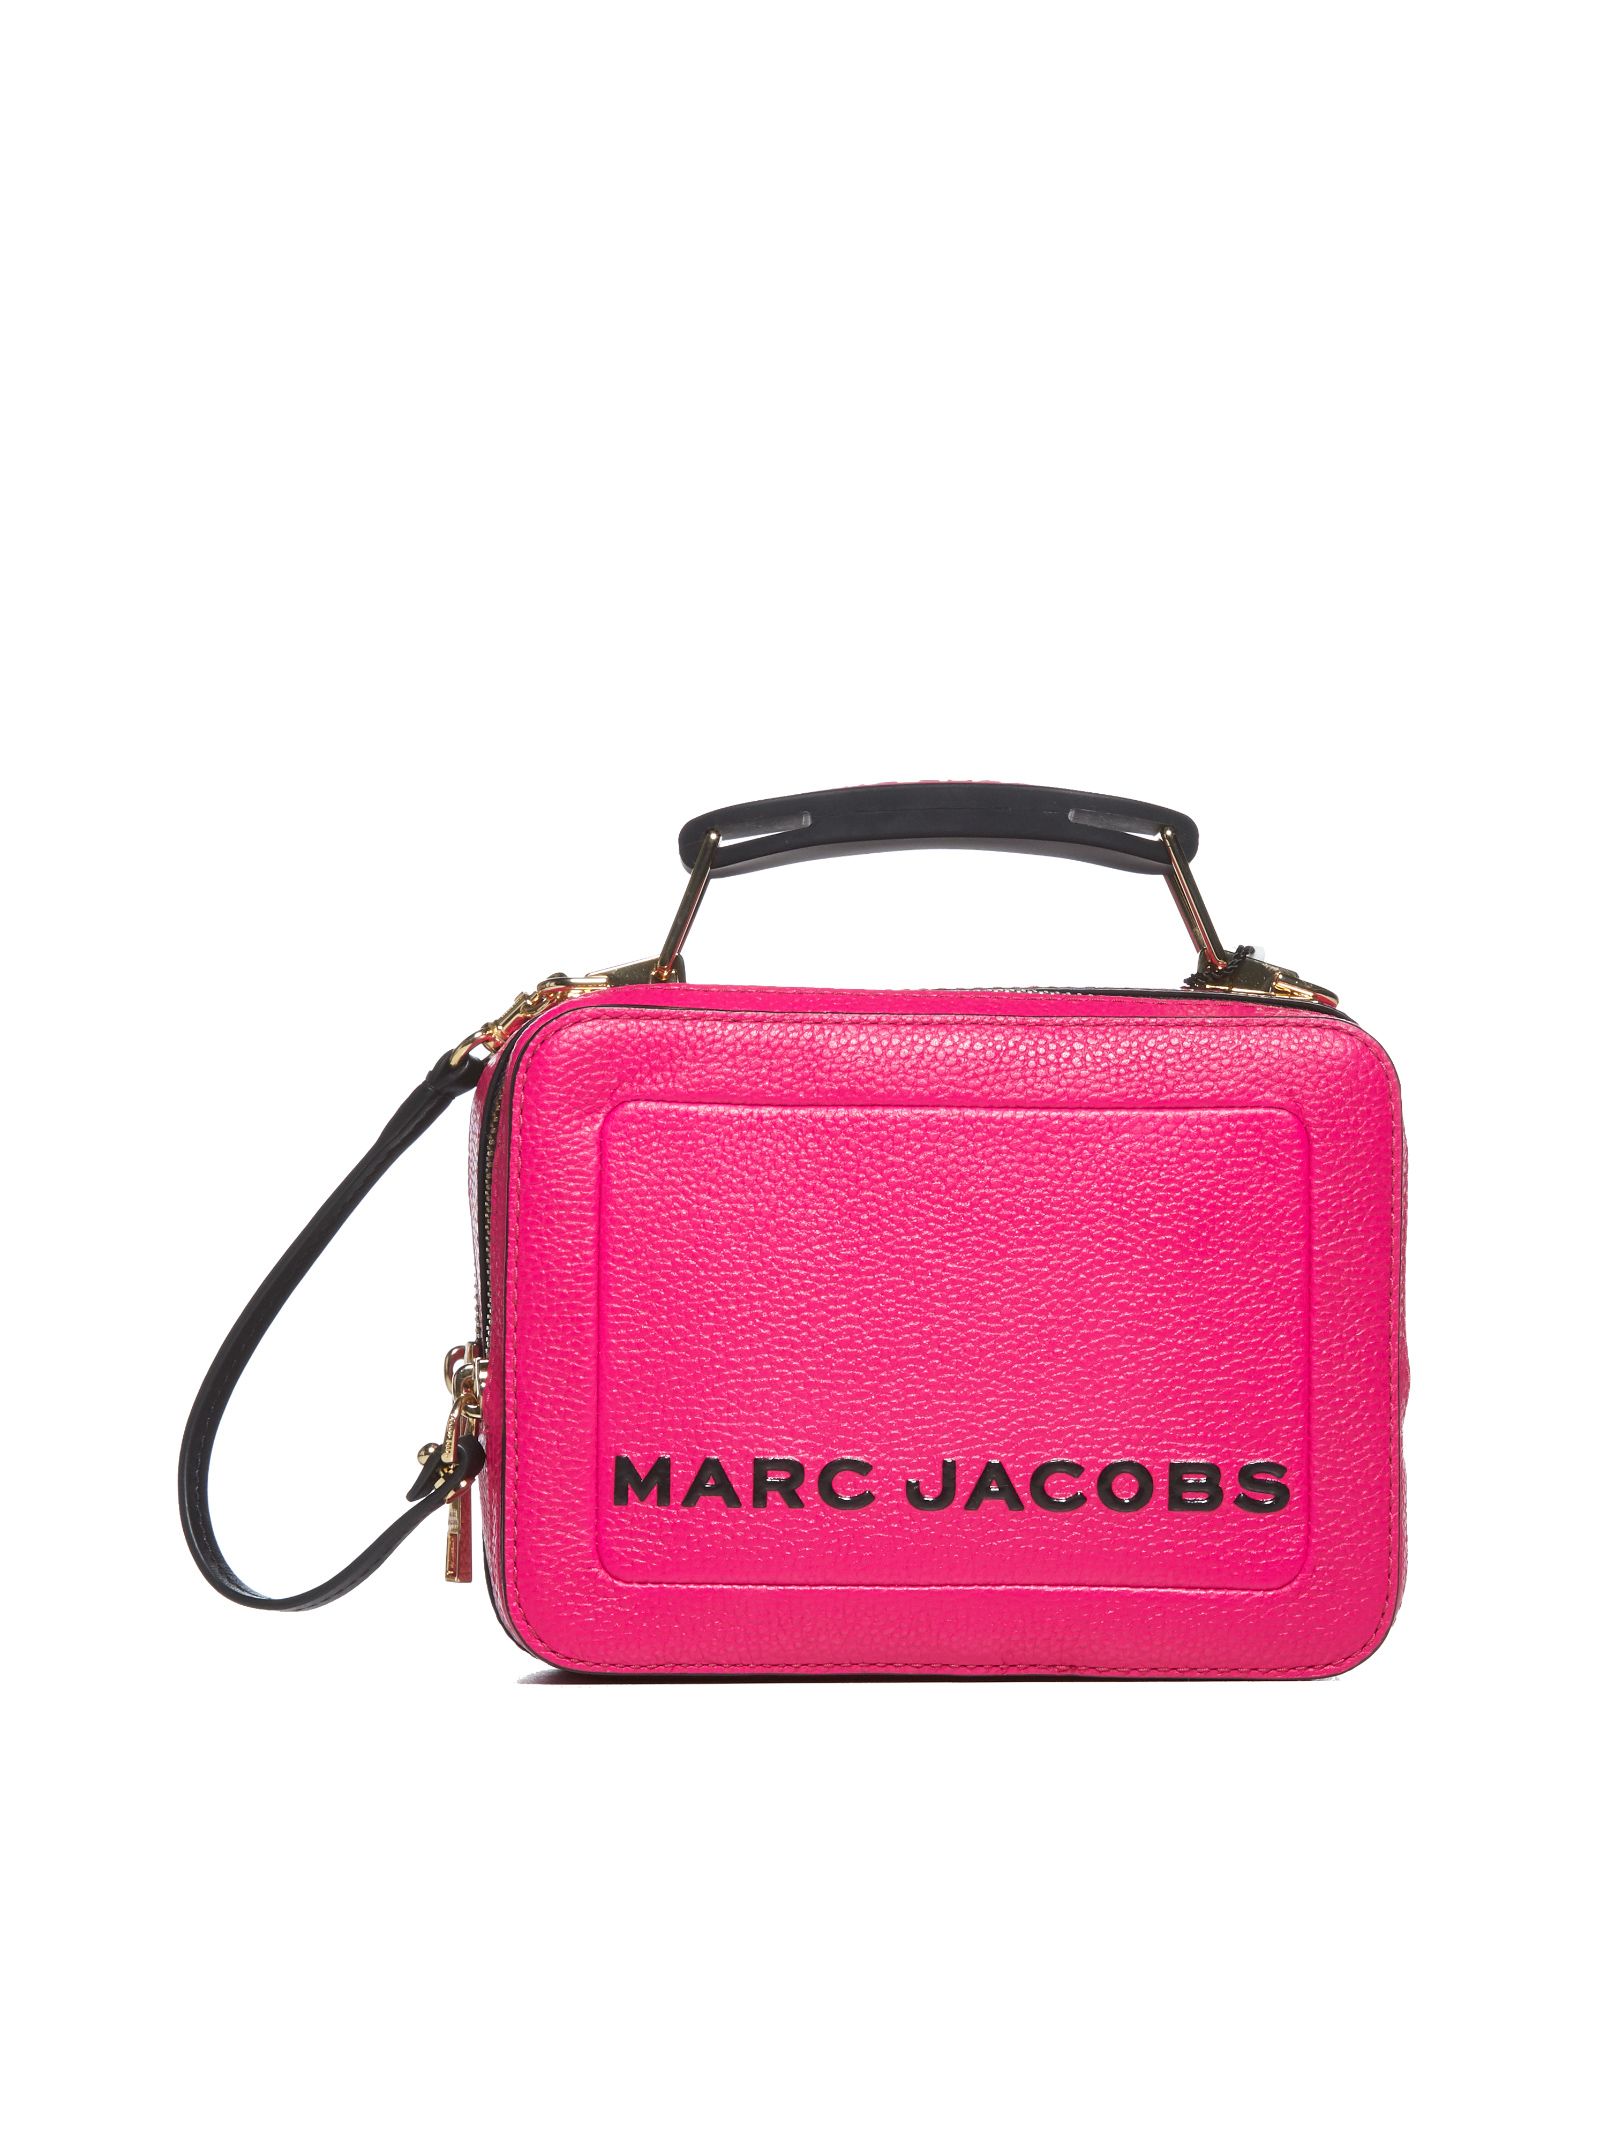 Marc Jacobs Shoulder Bag In Diva Pink | ModeSens